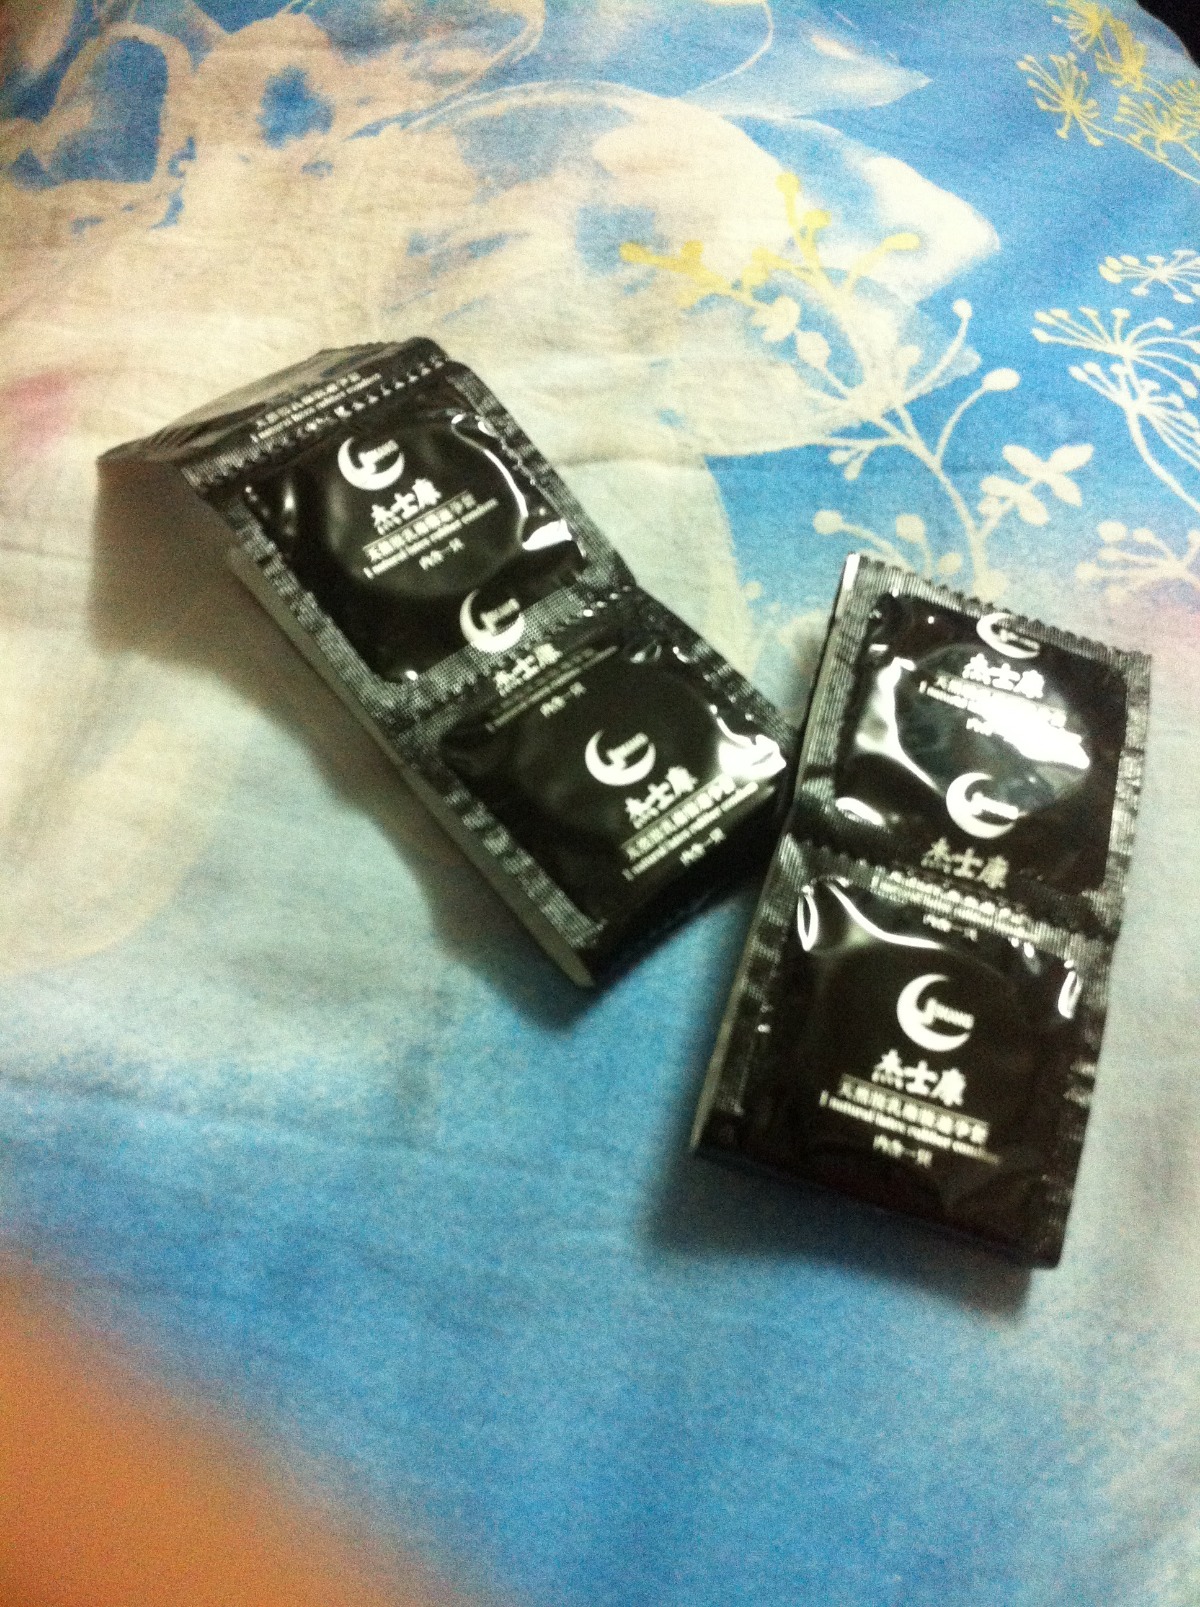 杰士康天然胶乳橡胶避孕套 外包装上标示了生产日期 失效日期 和生产